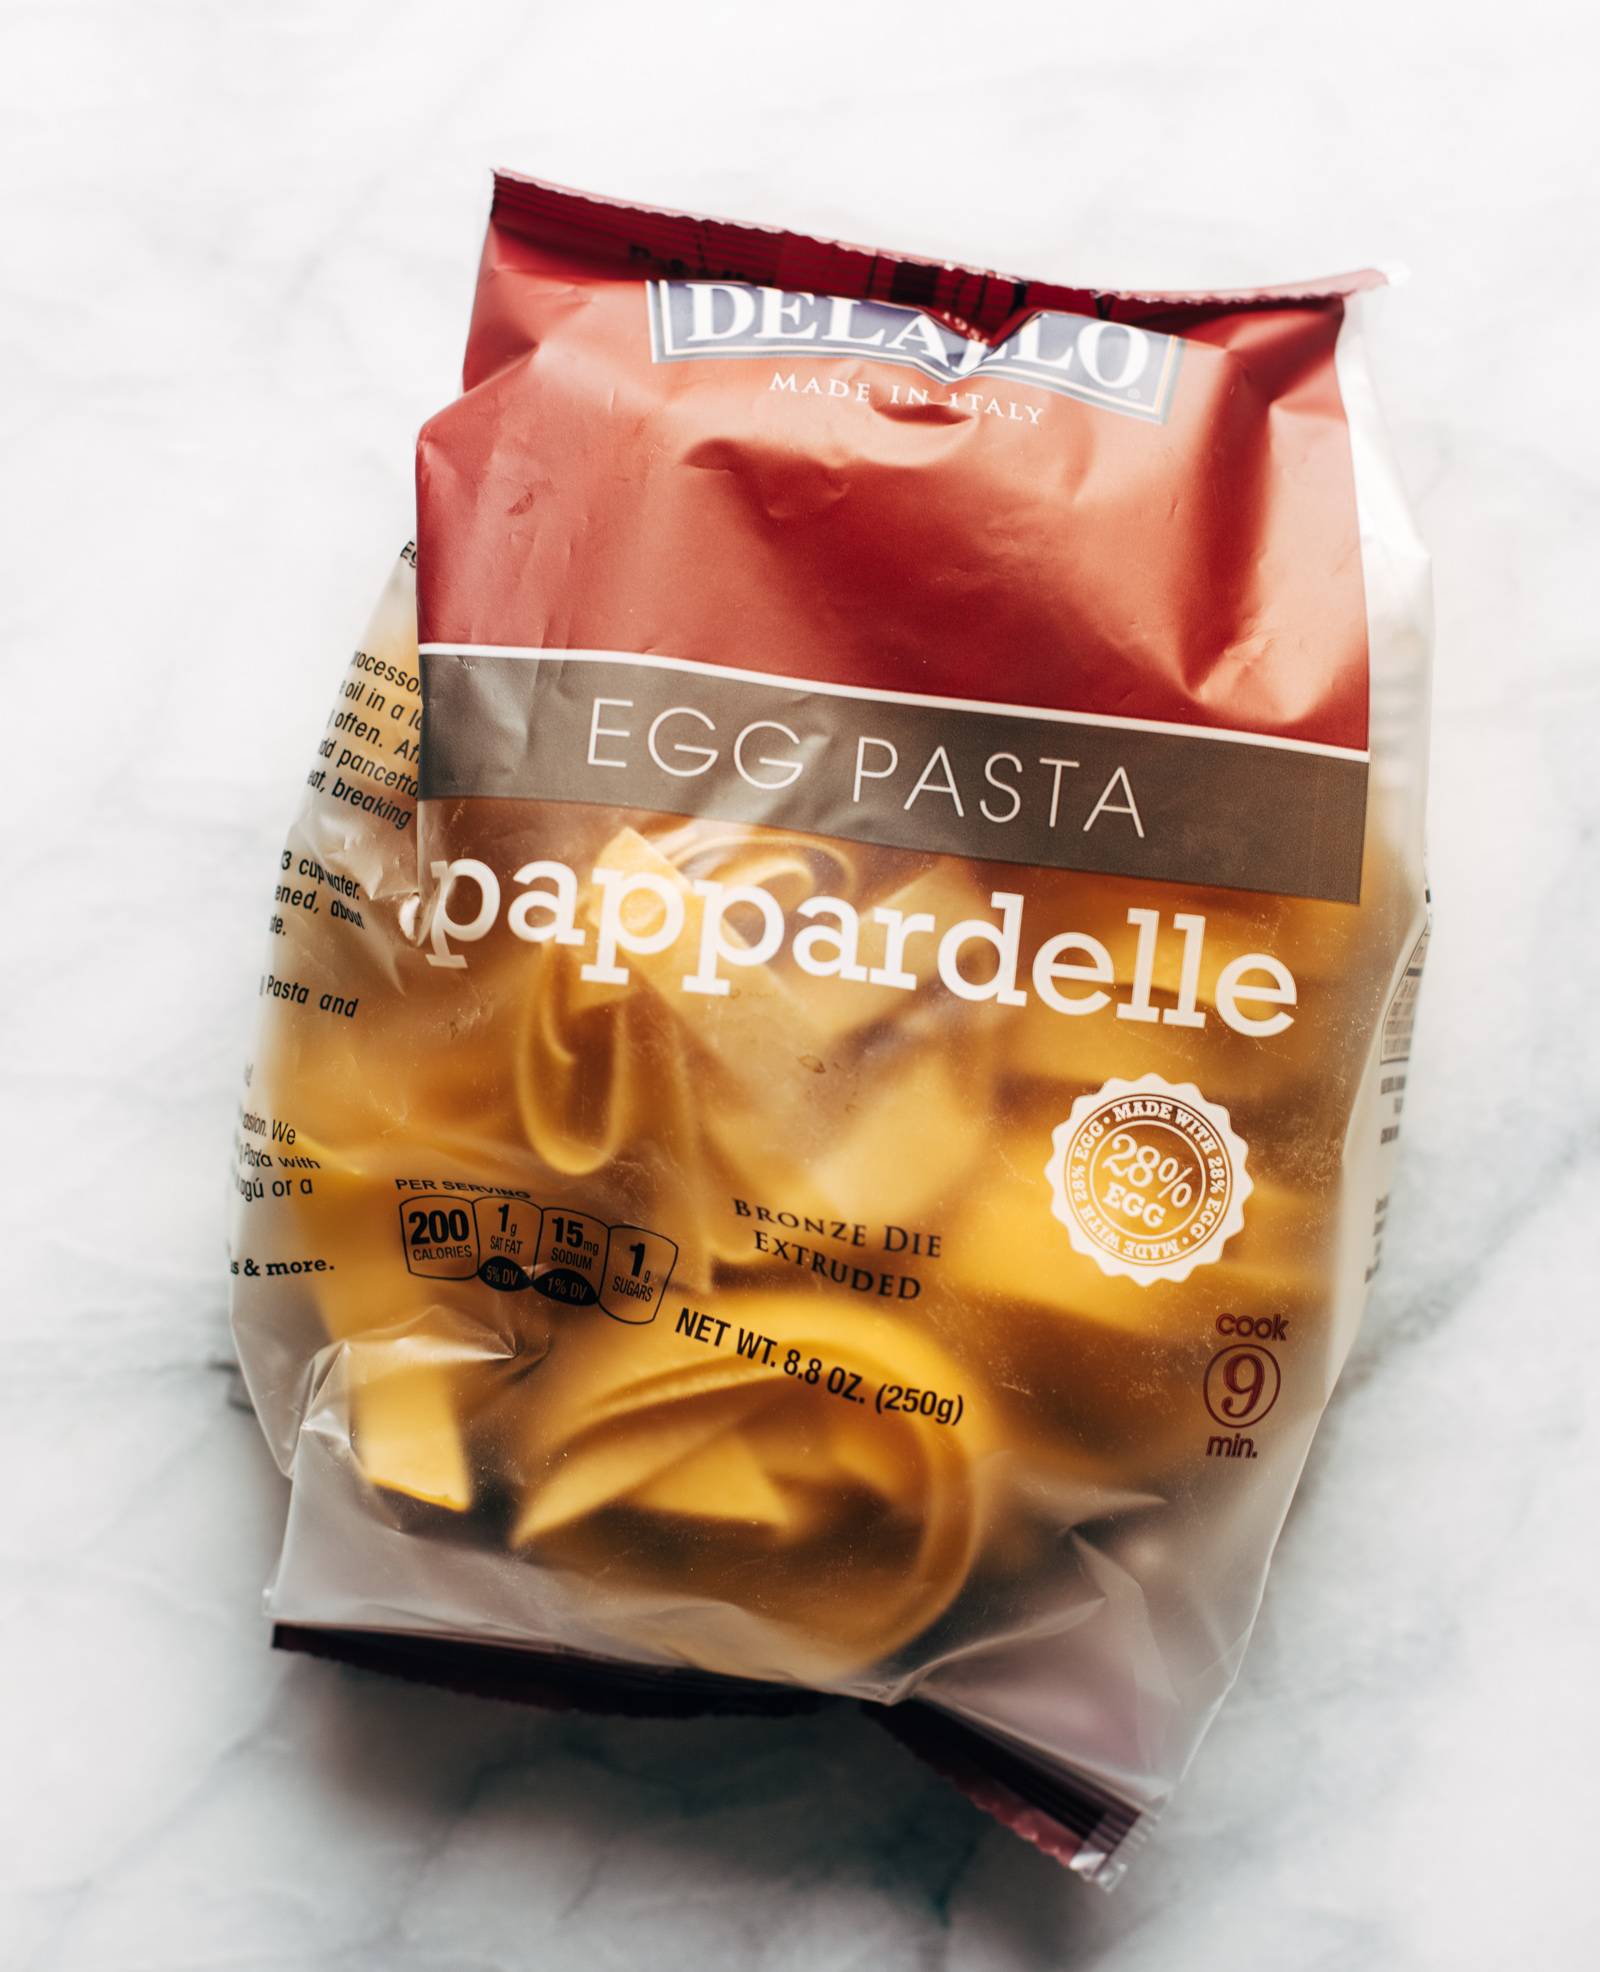 DeLallo egg pappardelle pasta